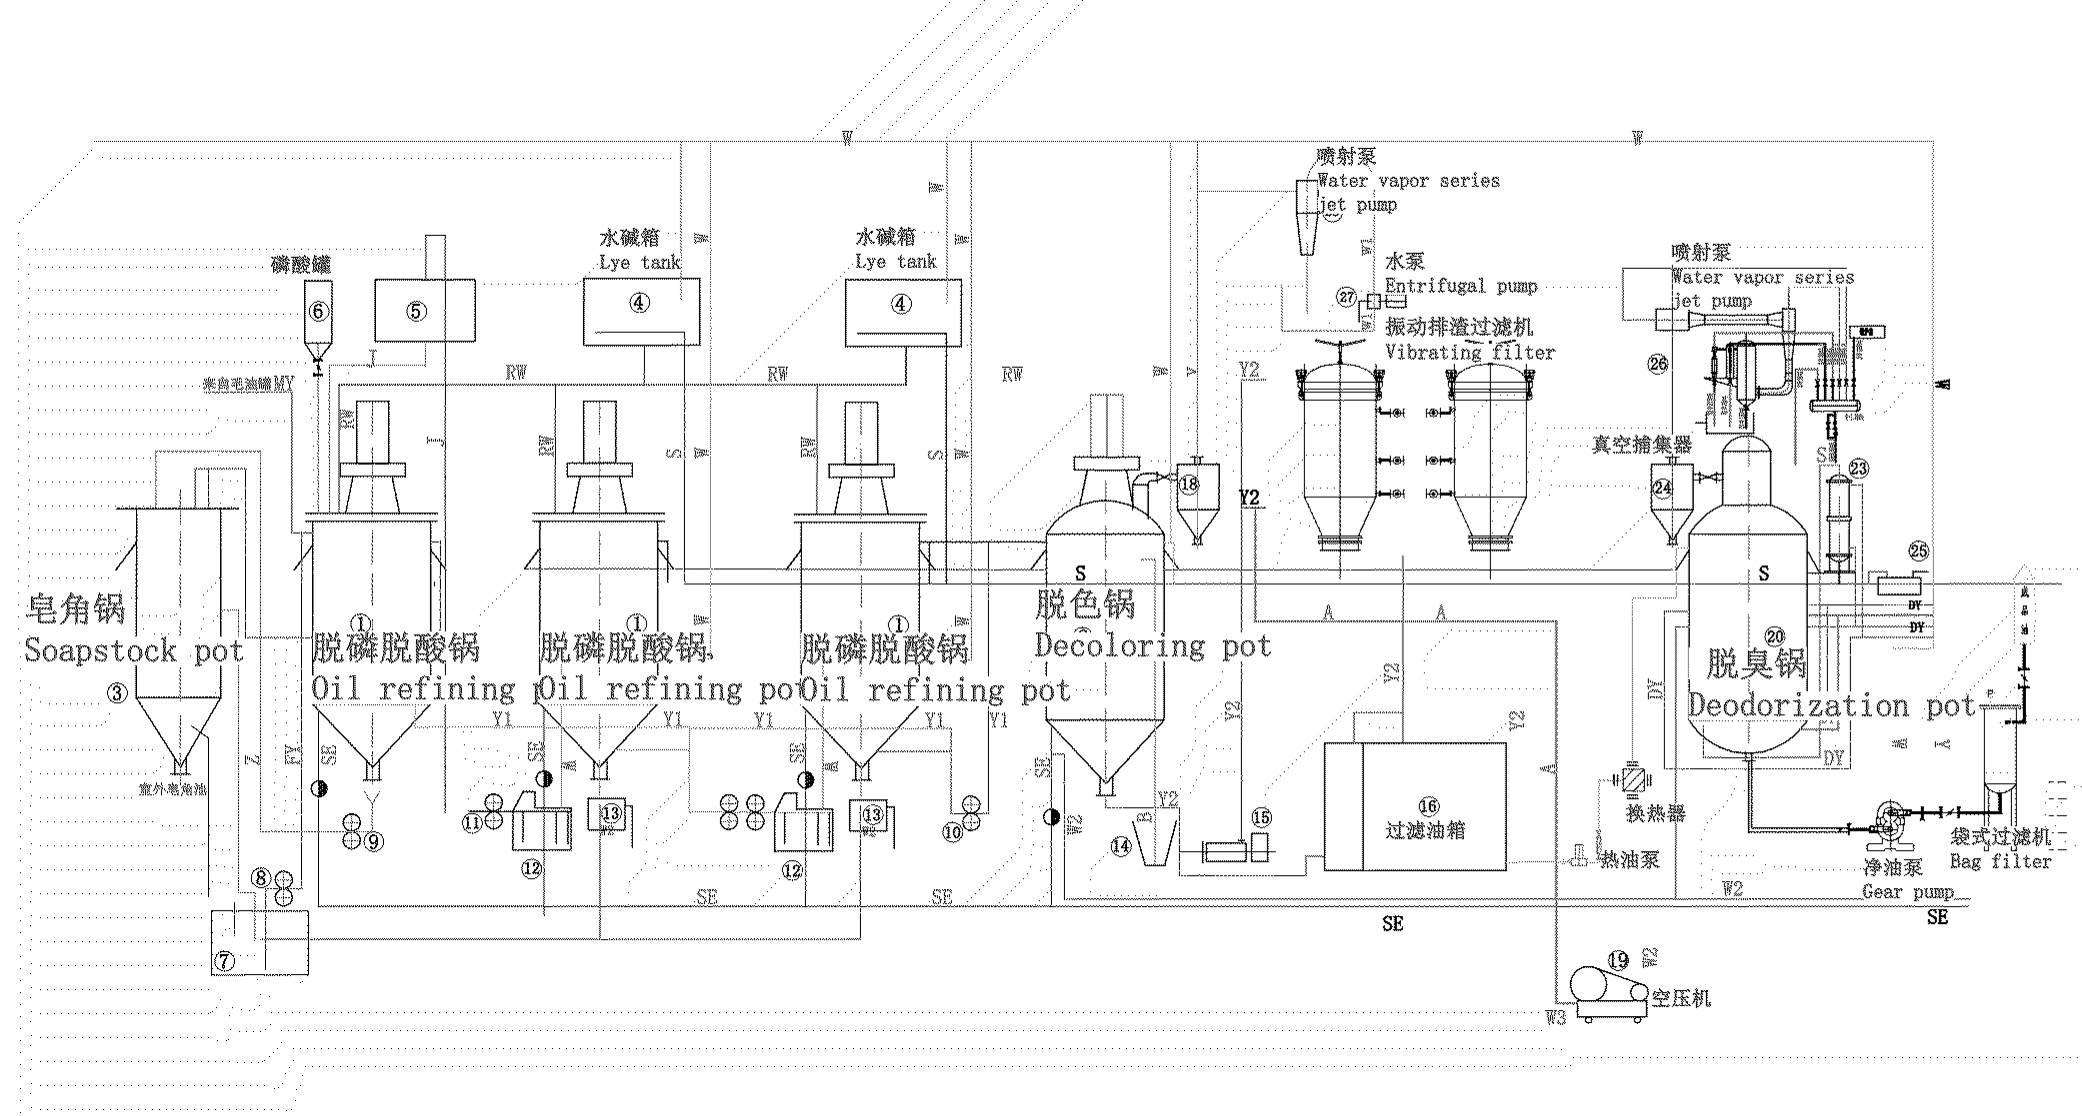 Refining equipment process diagram